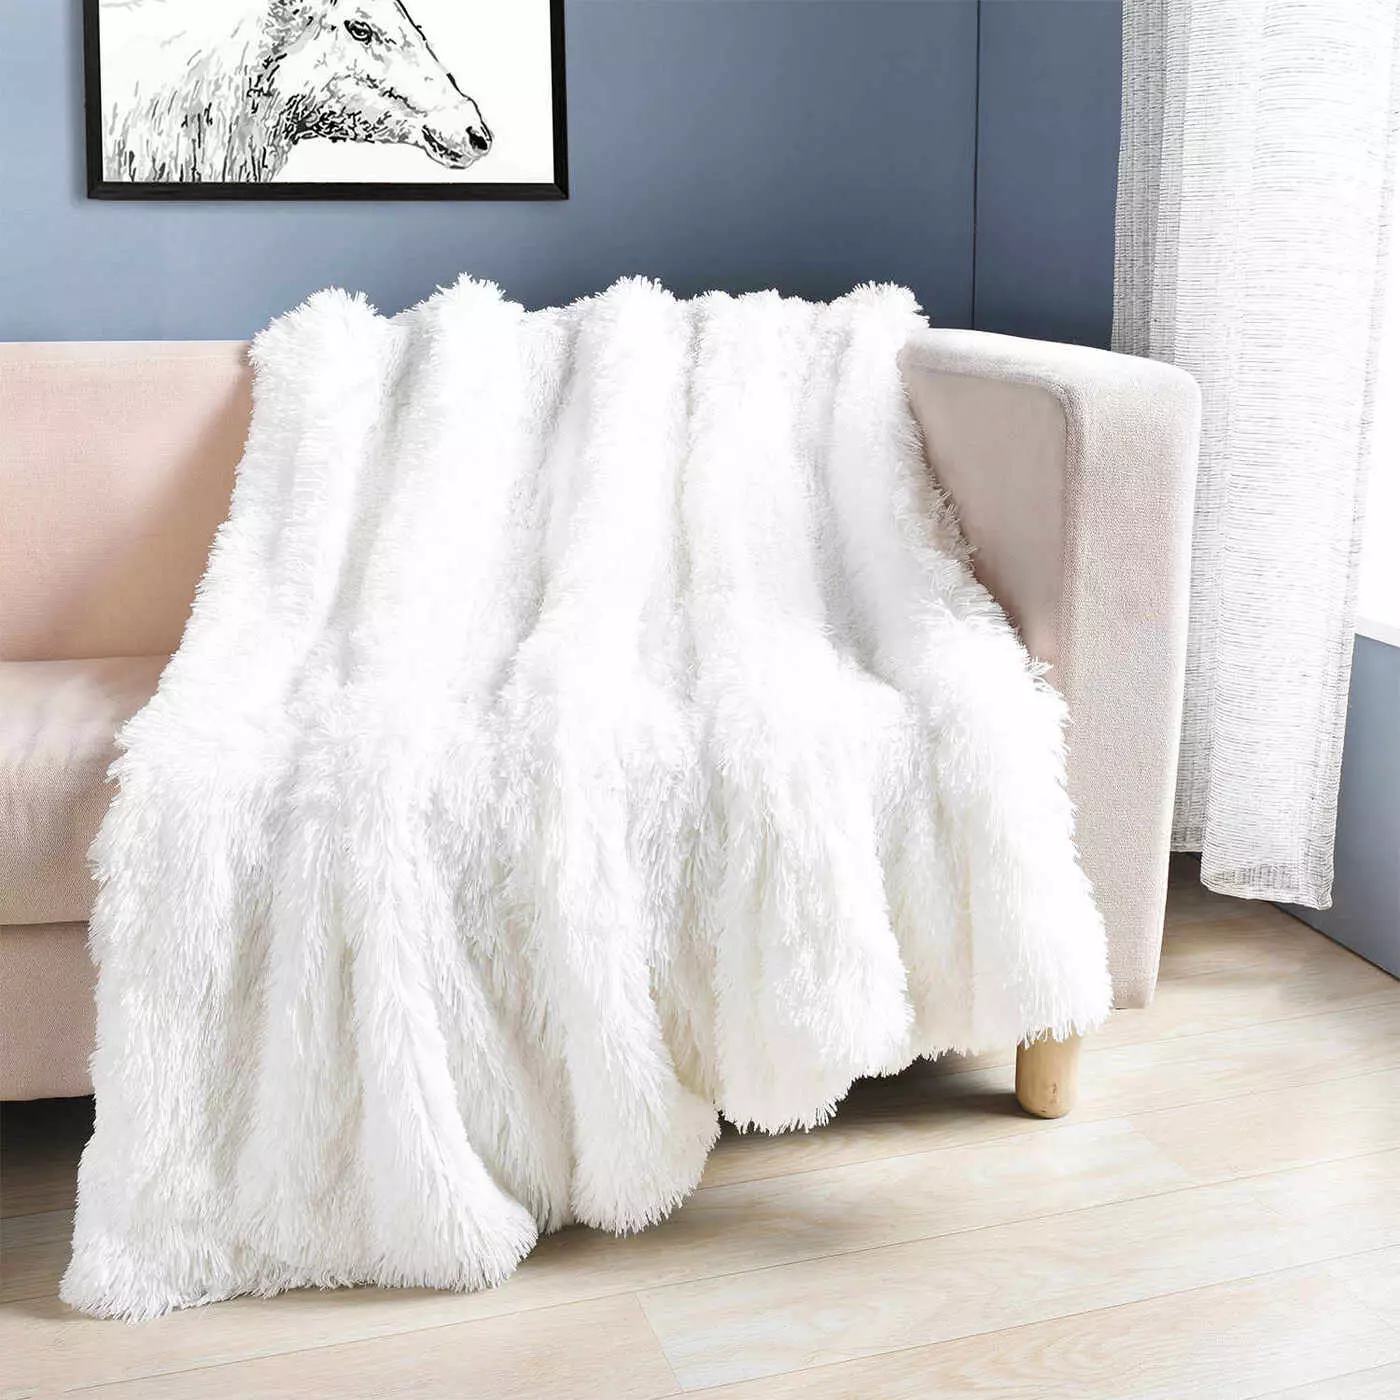 Biele prikrývky (37 fotiek): Fluffy BedsPreads na posteli 220x240 a ďalšie veľkosti. Ako Whiten? S dlhou hromadu bielej 24922_17